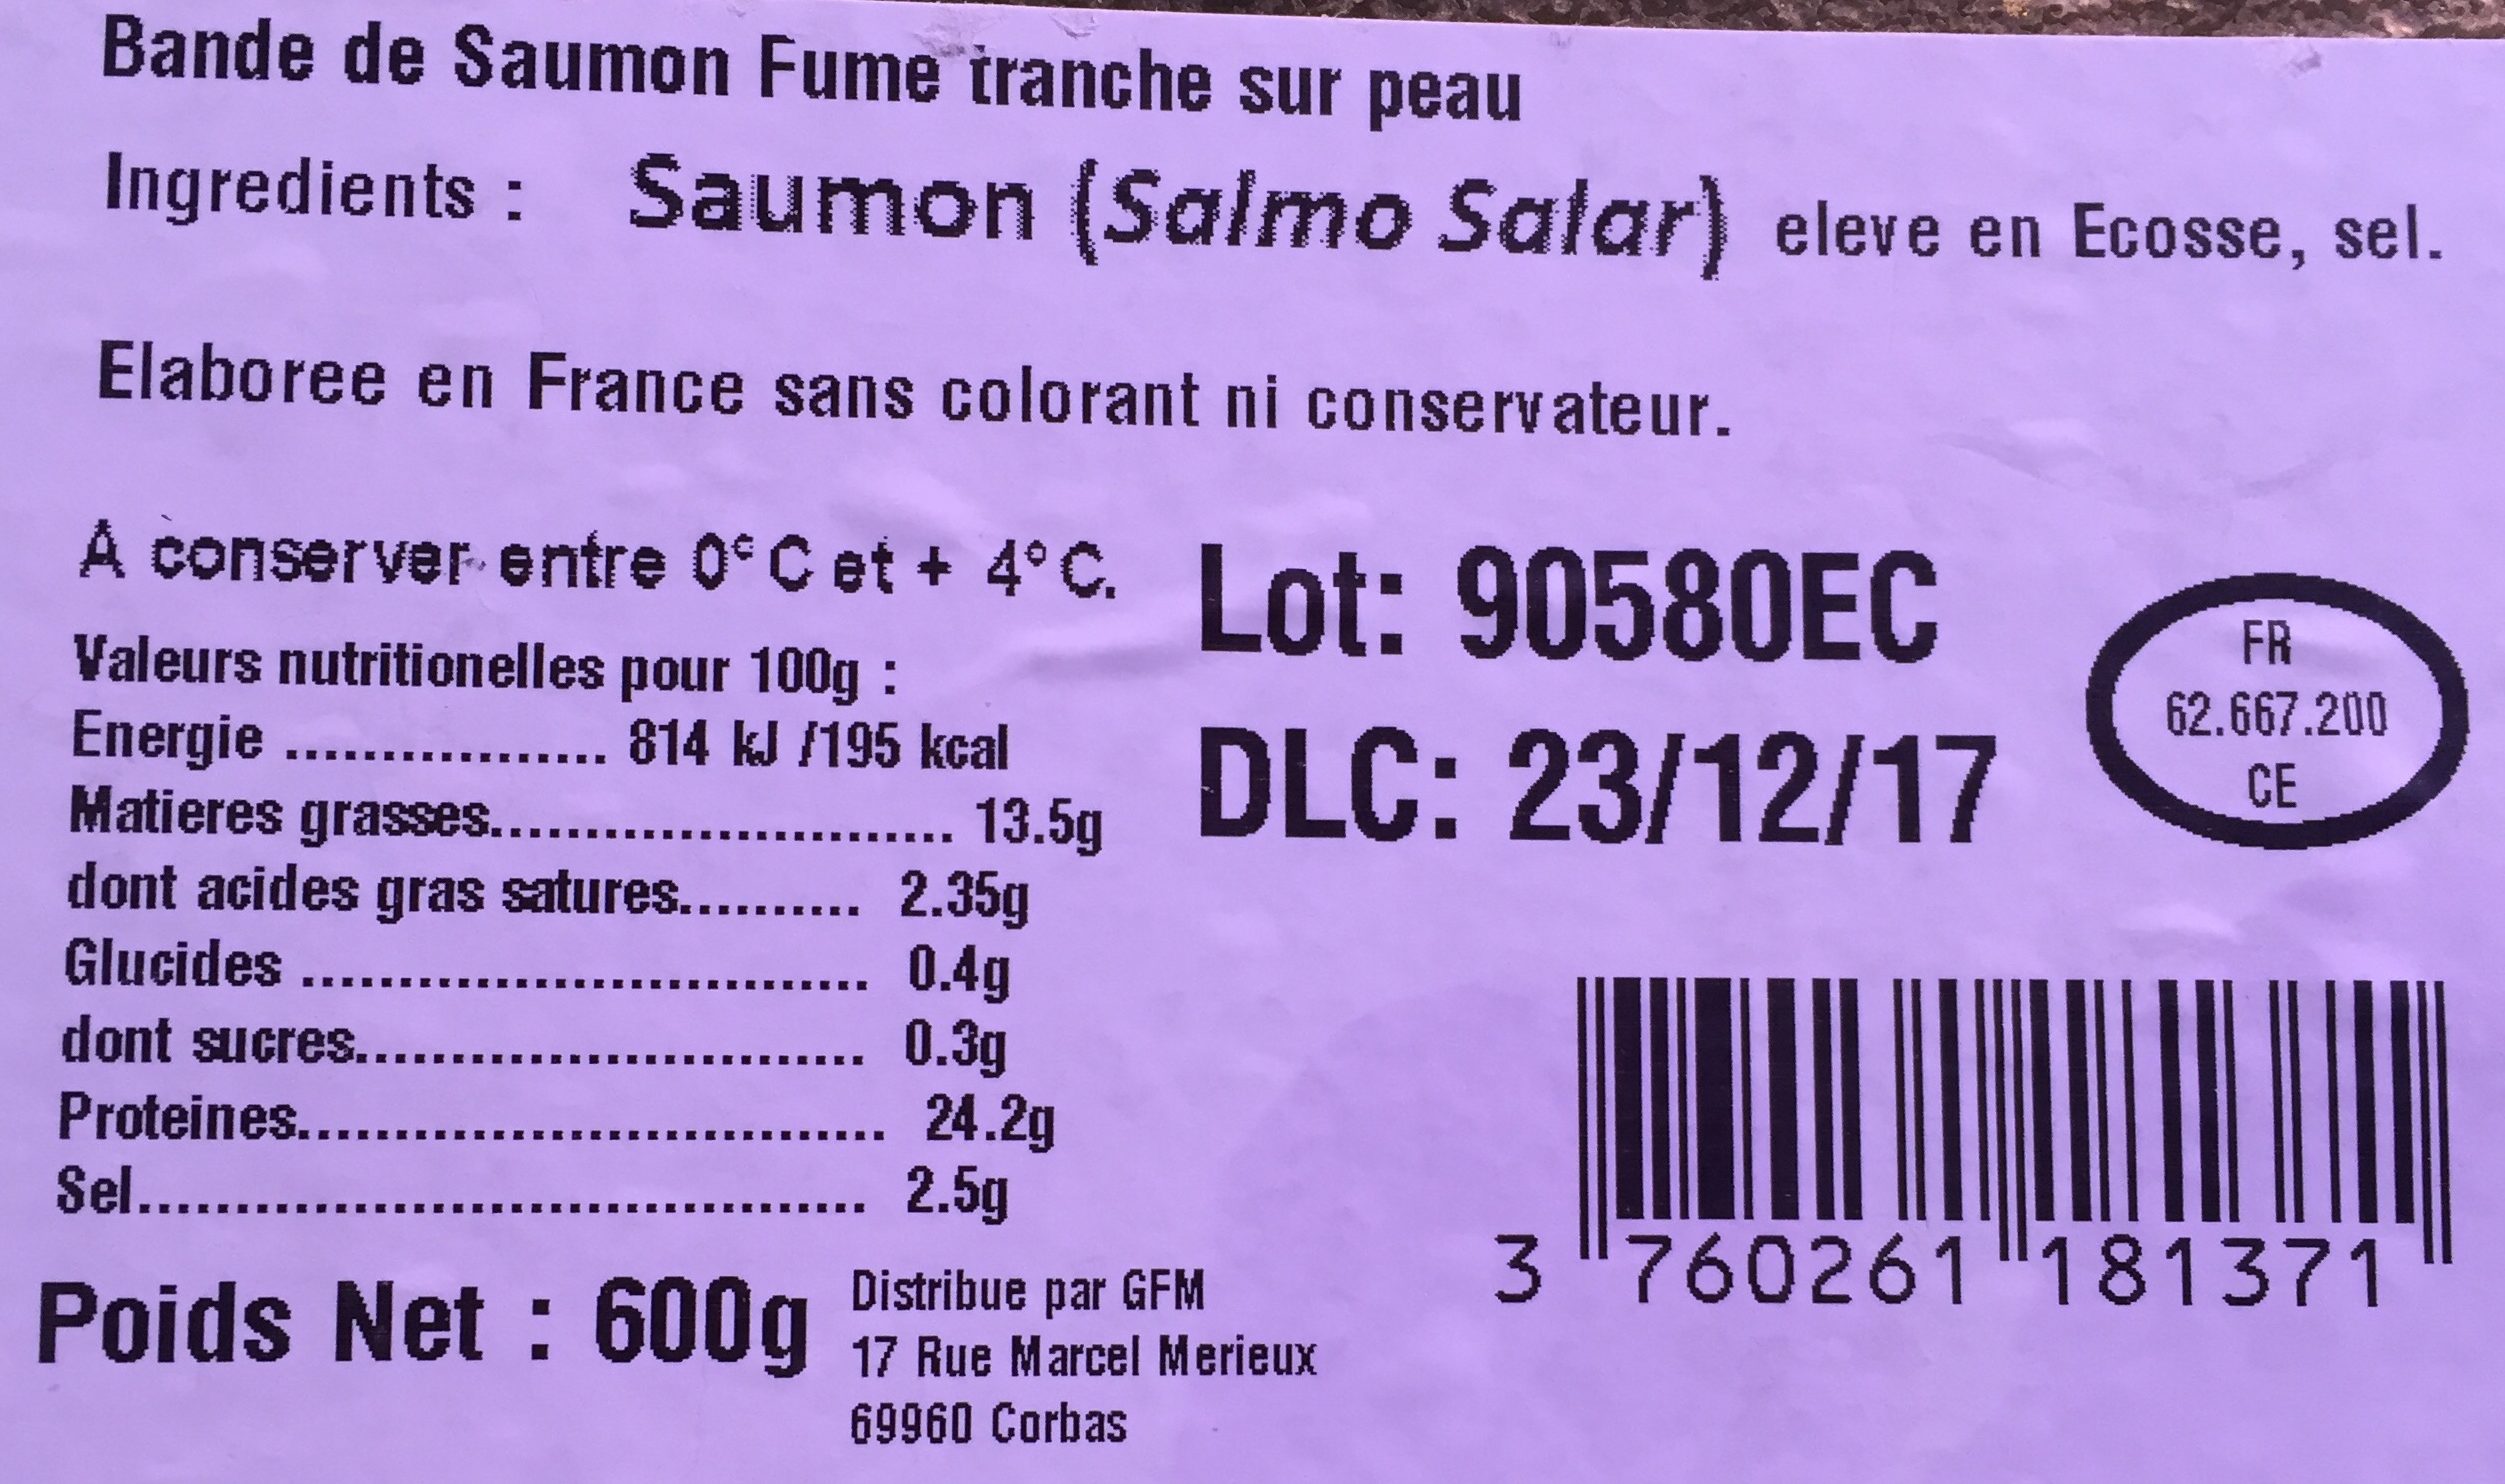 Saumon d'Ecosse fumé - Ingredients - fr